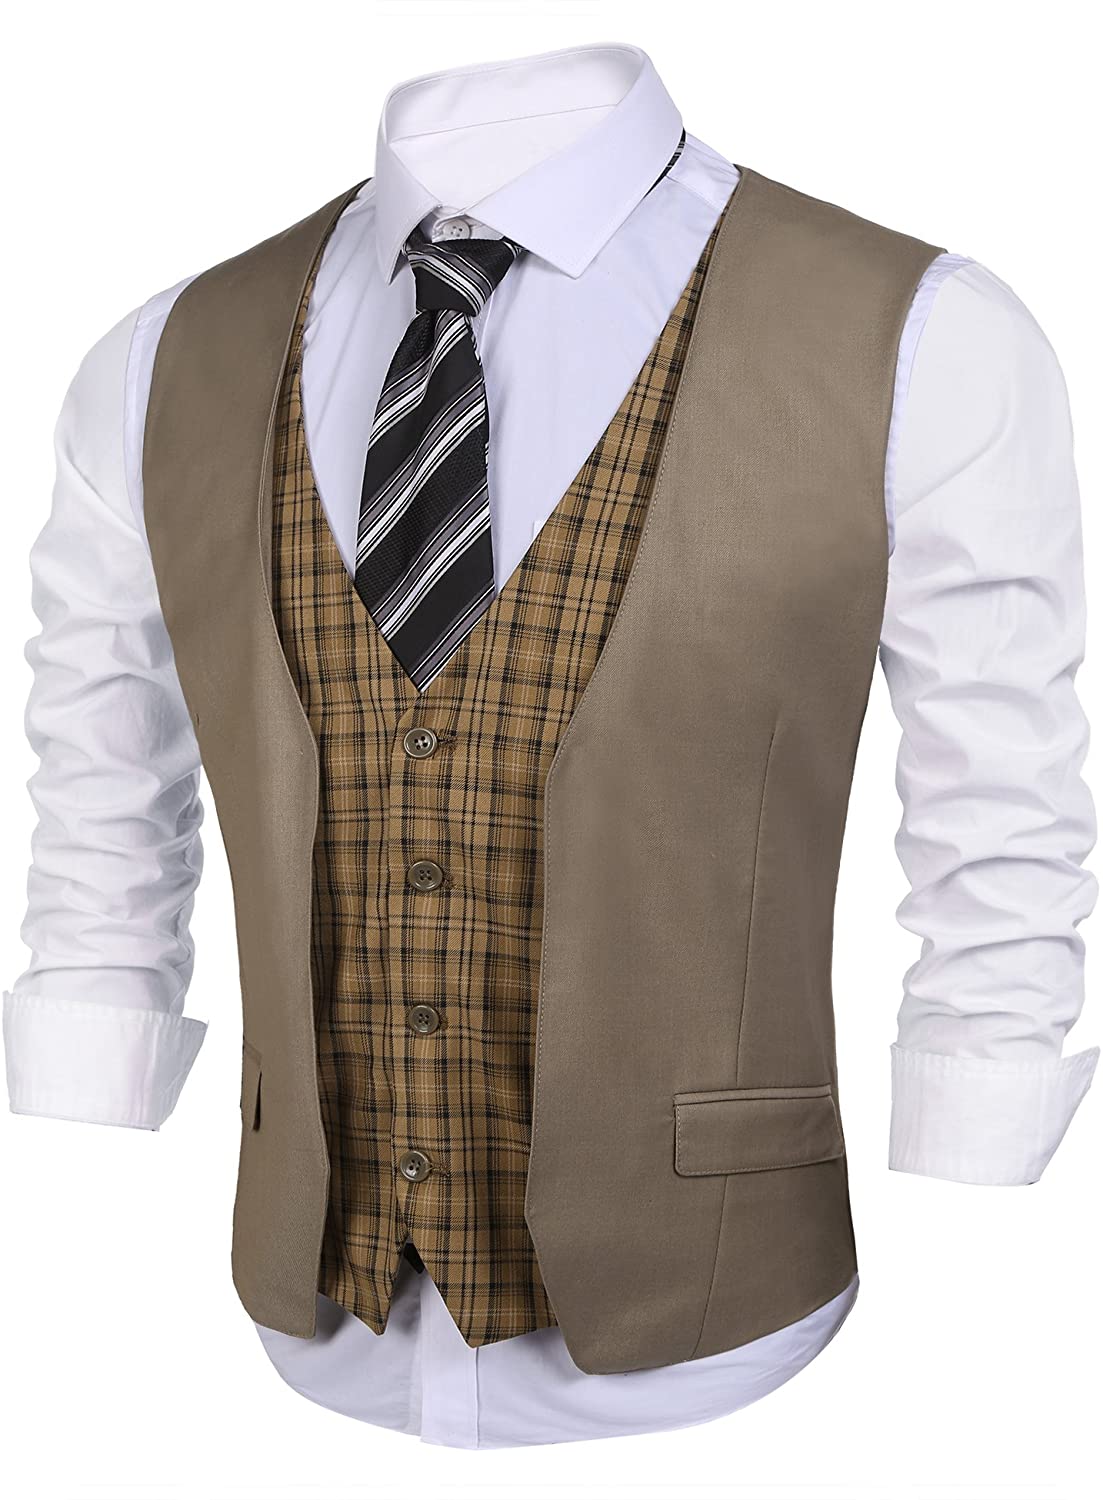 COOFANDY Men's Business Suit Vest Layered Plaid Dress Vest Waistcoat